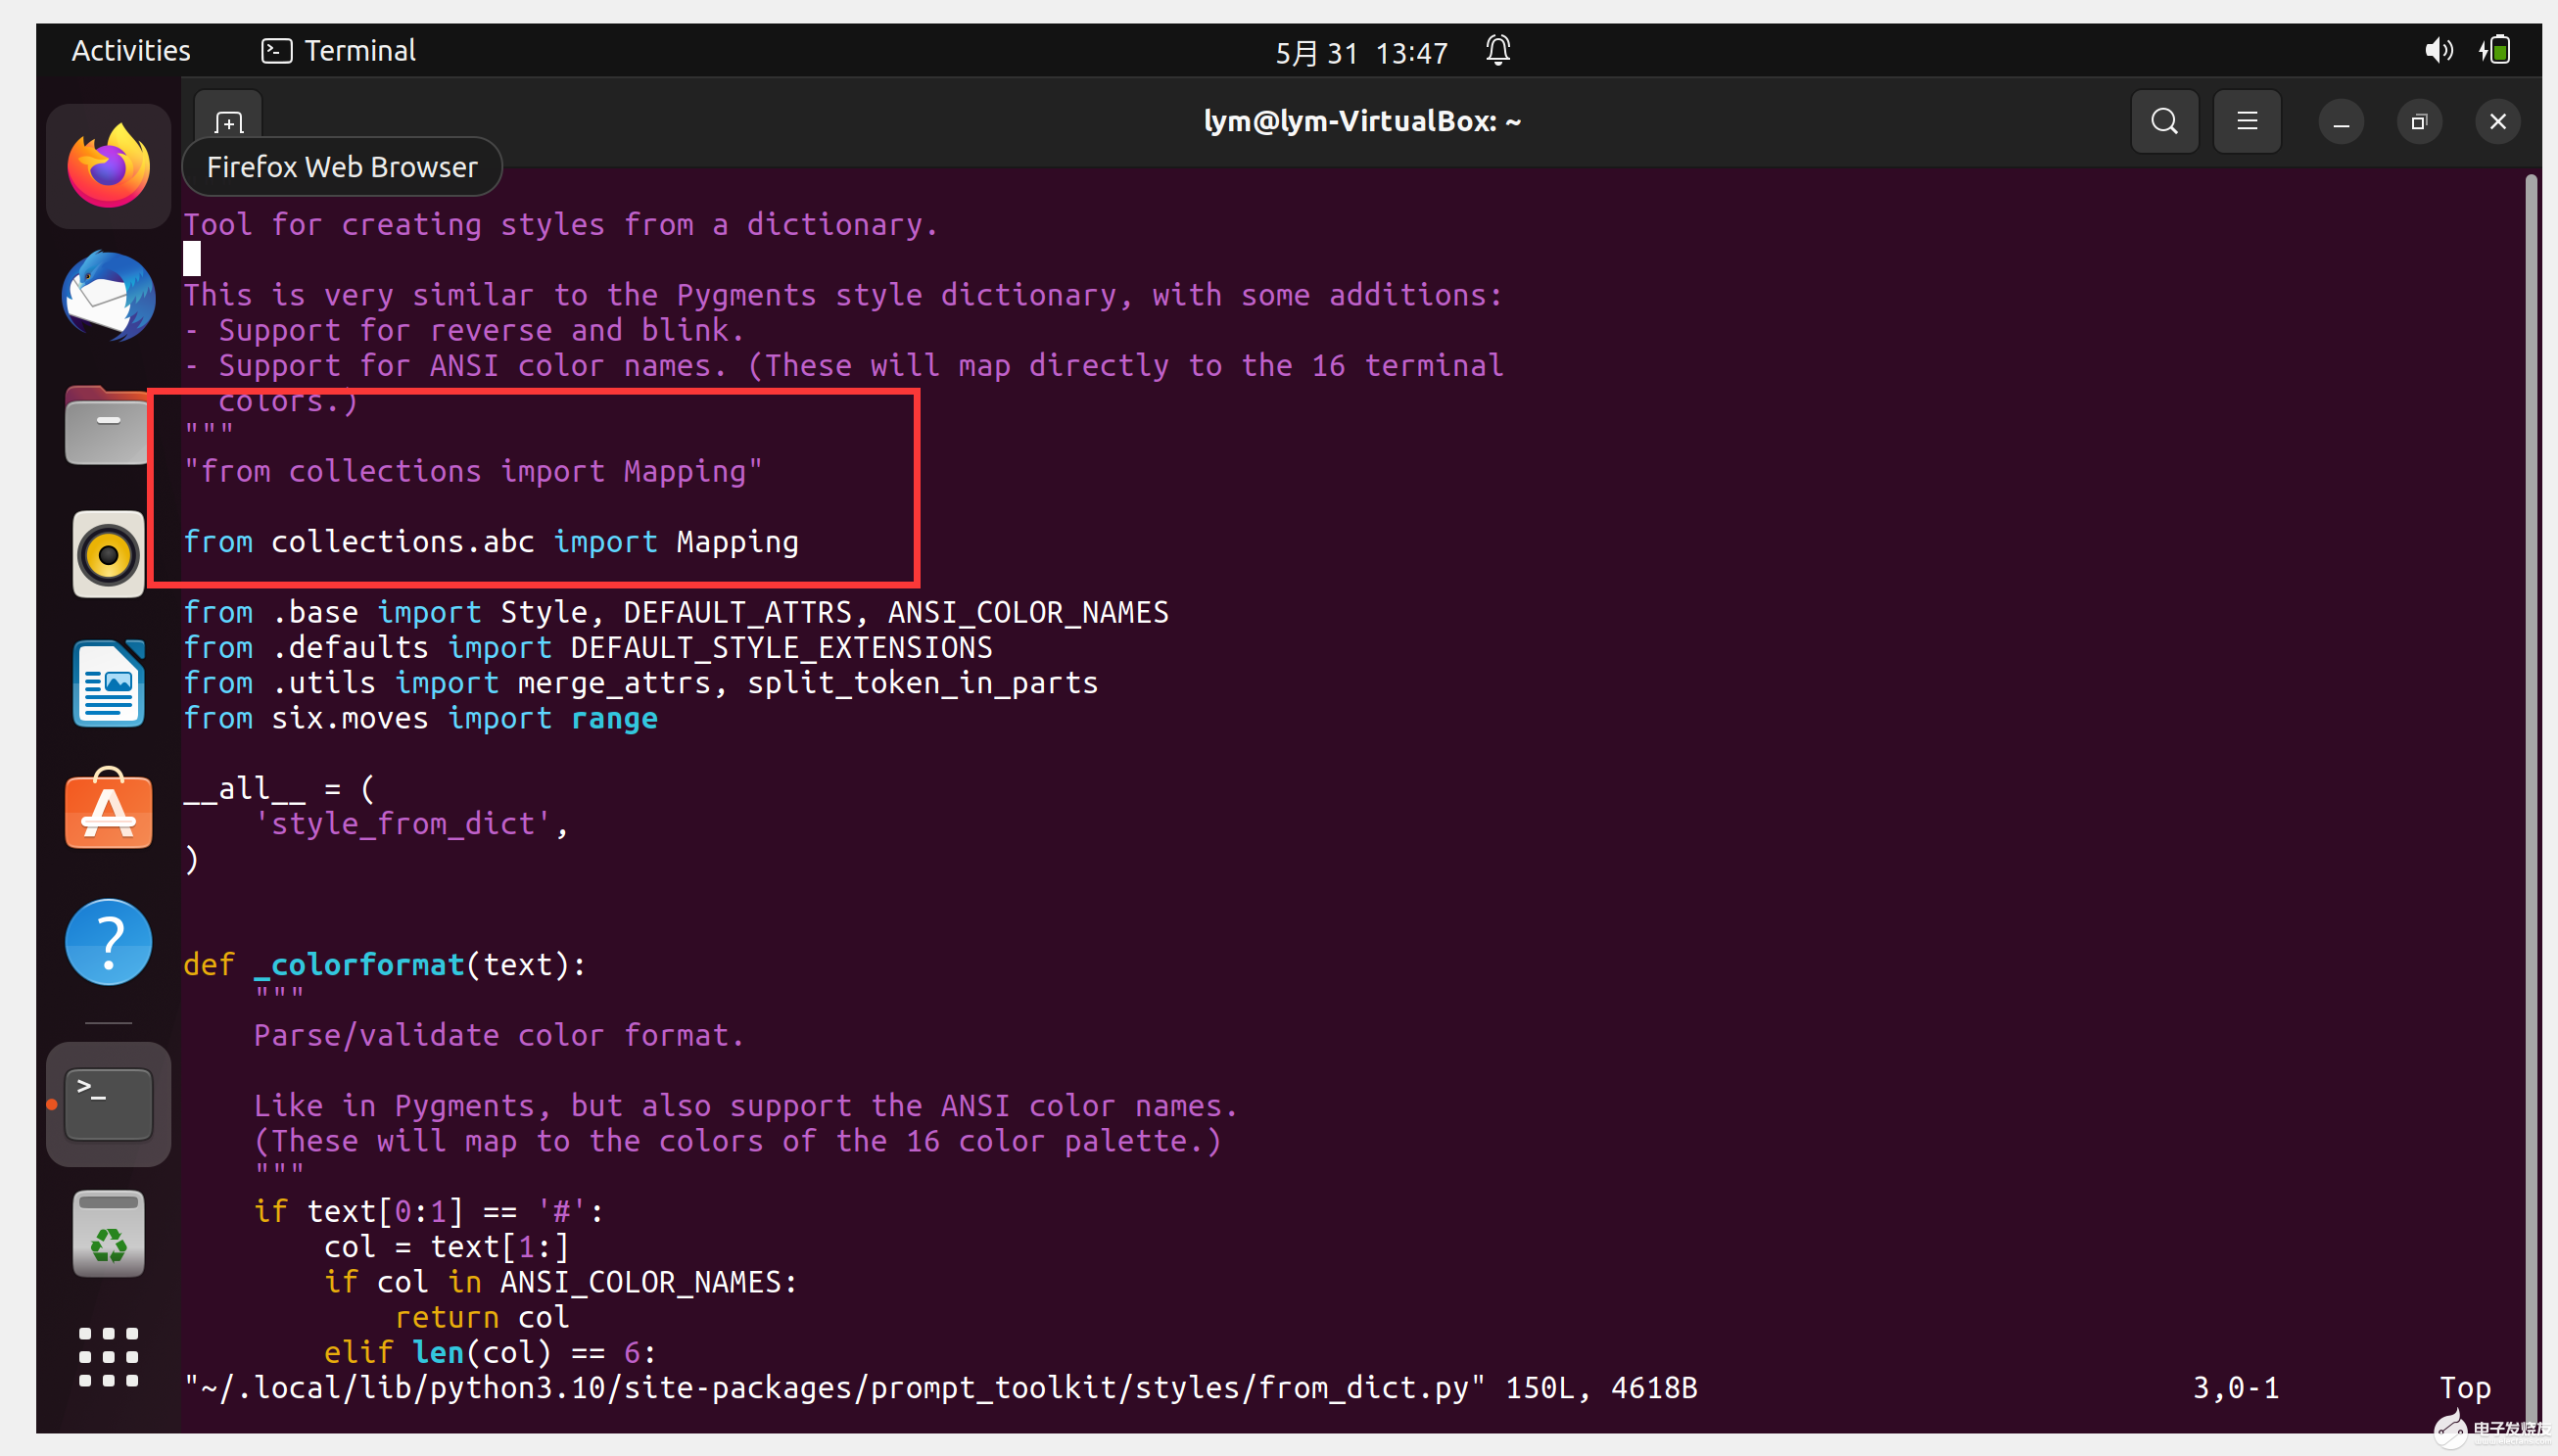 【小凌派RK2206开发板试用体验】1.Ubuntu22.04搭建编译环境遇到的问题及解决方法